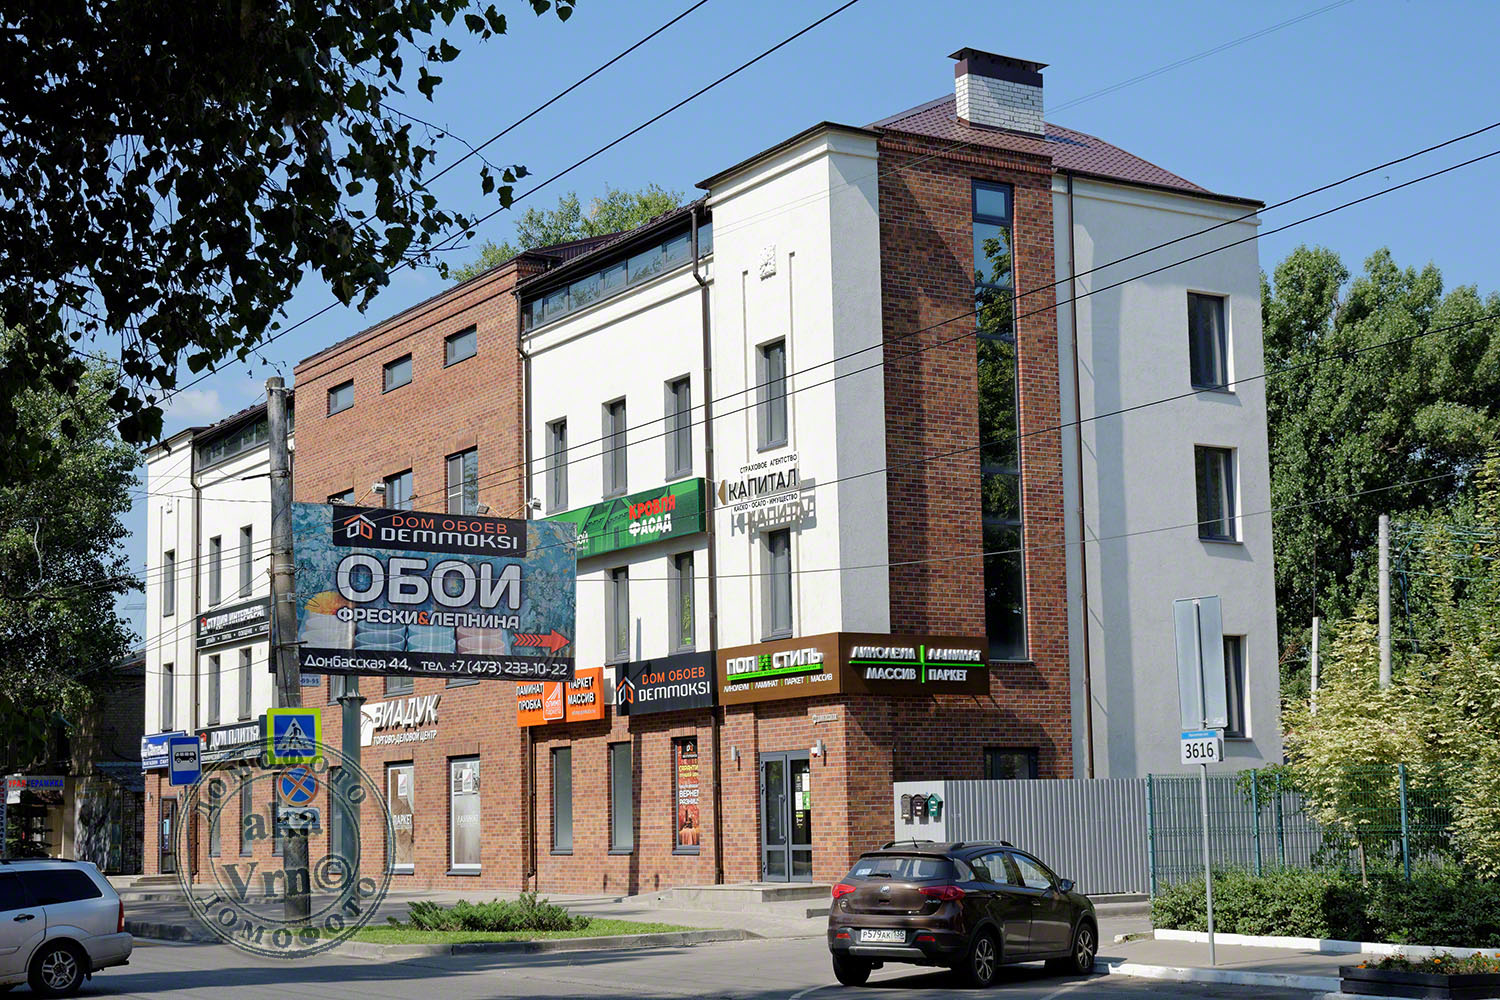 Woroneż, Донбасская улица, 44